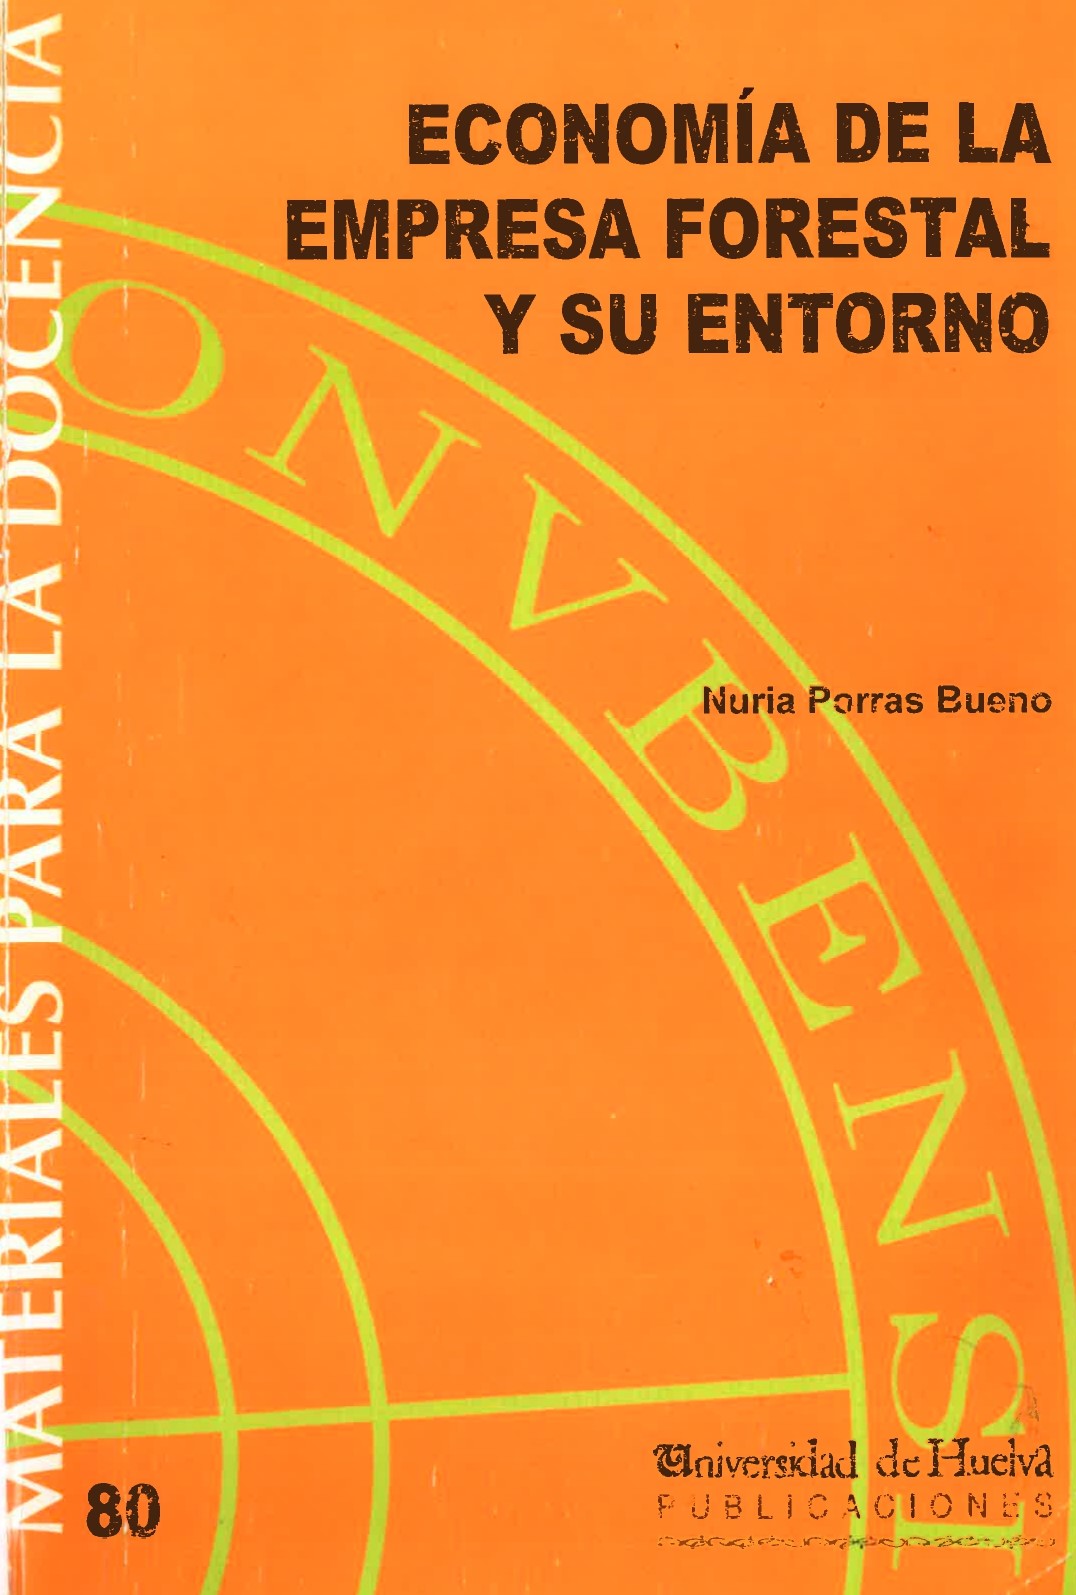 Imagen de portada del libro Economía de la Empresa Forestal y su Entorno